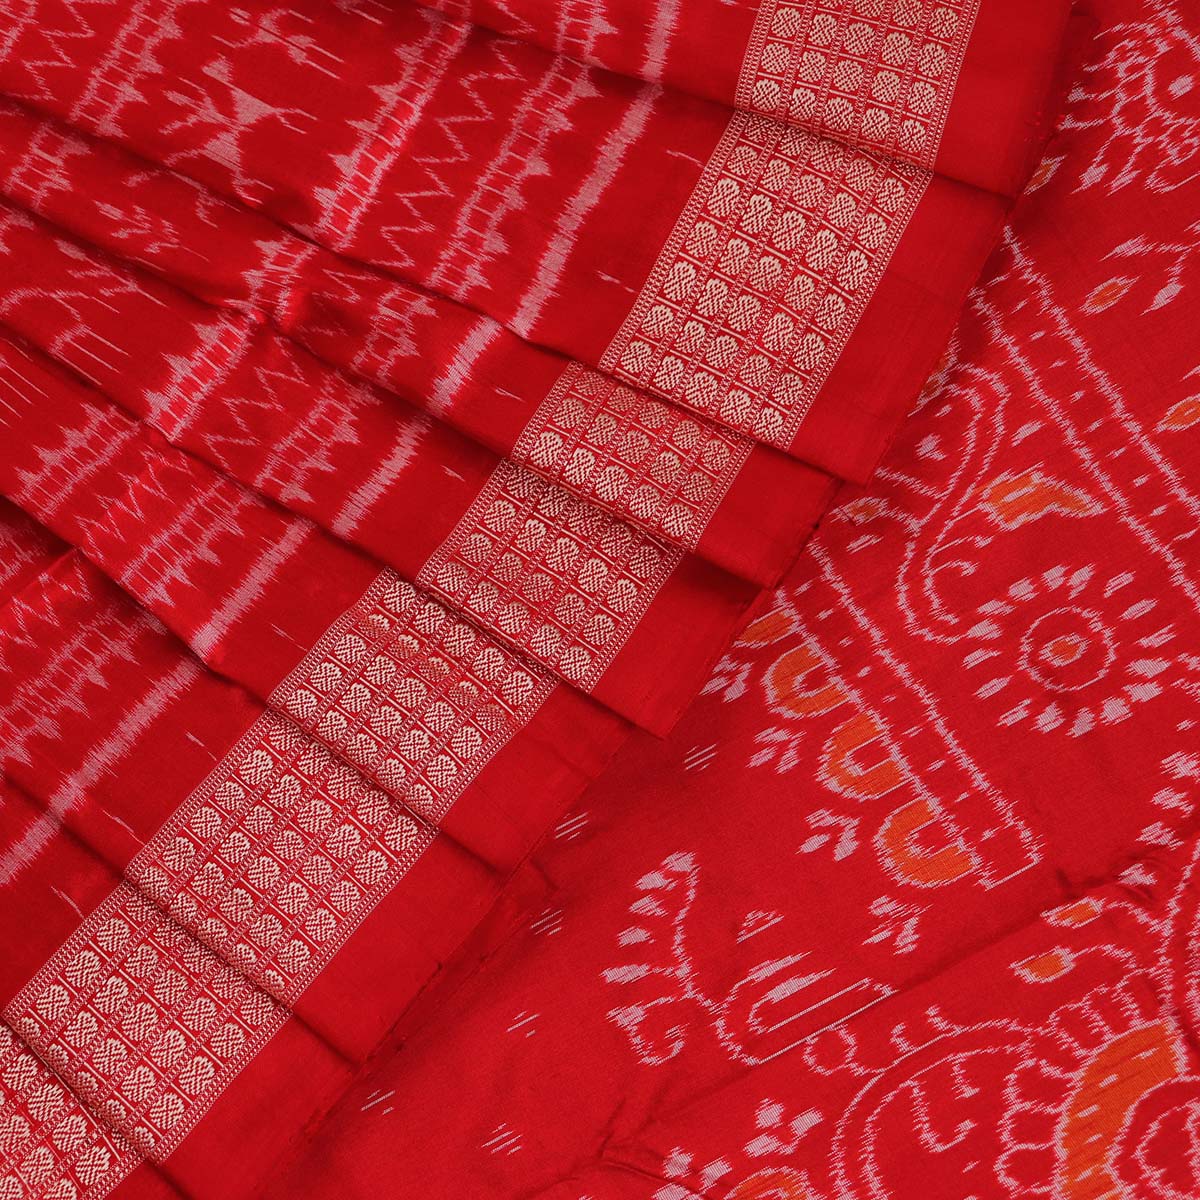 Buy SAMBALPURI BASTRALAYA Woven, Dyed Sambalpuri Cotton Blend Red, White,  Black Sarees Online @ Best Price In India | Flipkart.com